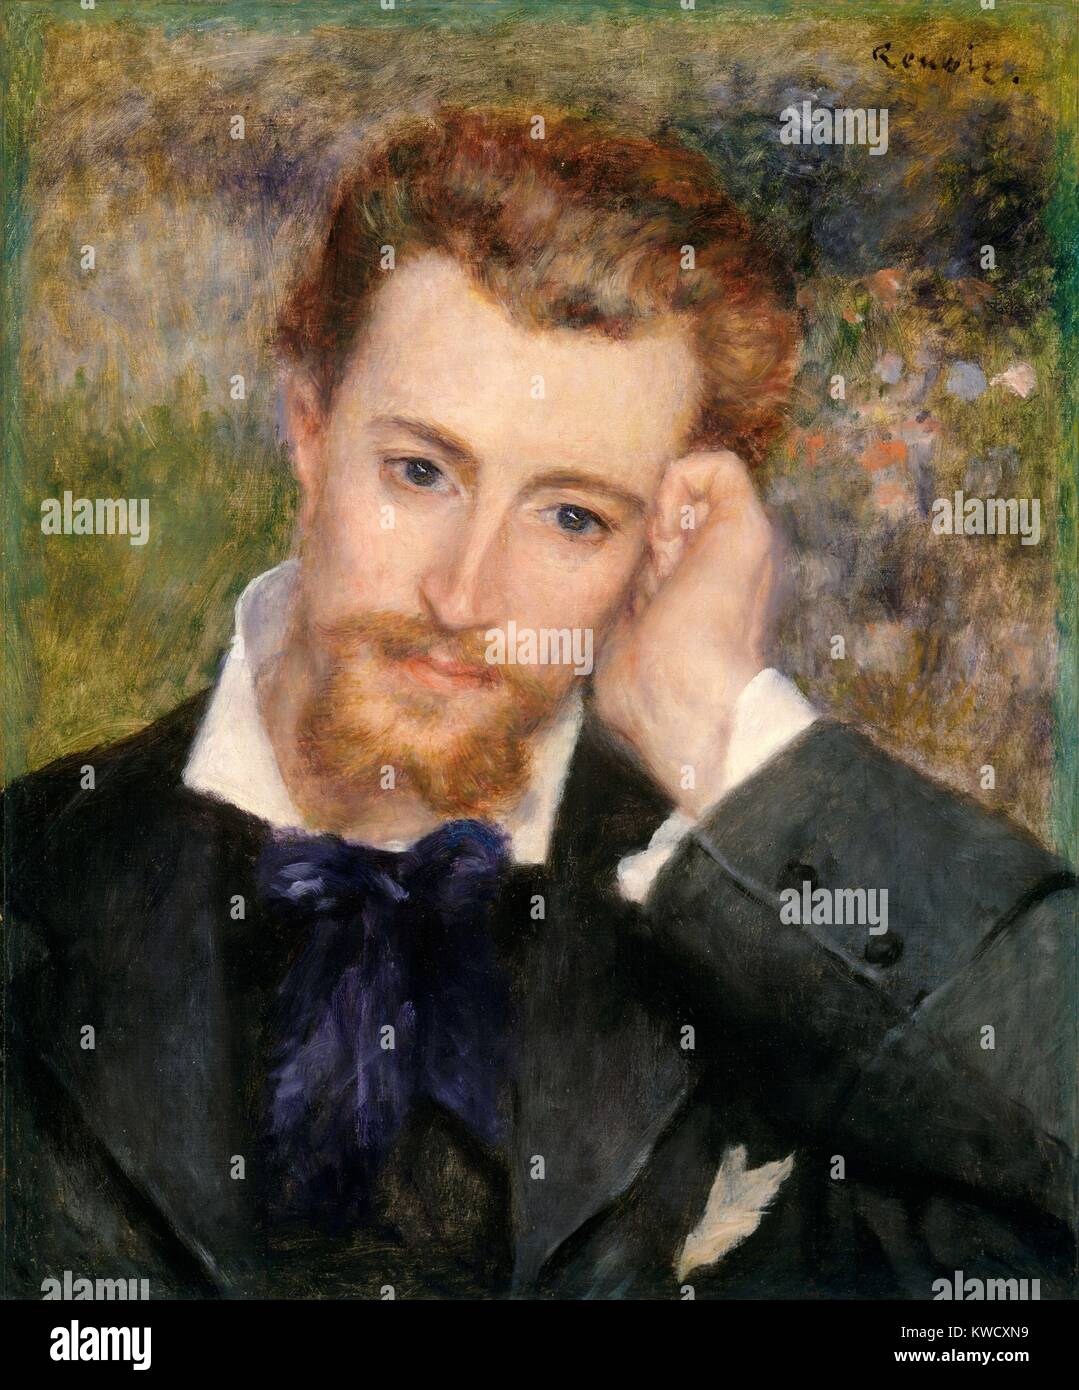 Eugene Murer von Auguste Renoir, 1877, französischer impressionistischer Malerei, Öl auf Leinwand. Murer war ein Künstler, Konditor, Schriftsteller, Dichter und Sammler impressionistischer Gemälde (BSLOC 2017 3 72) Stockfoto